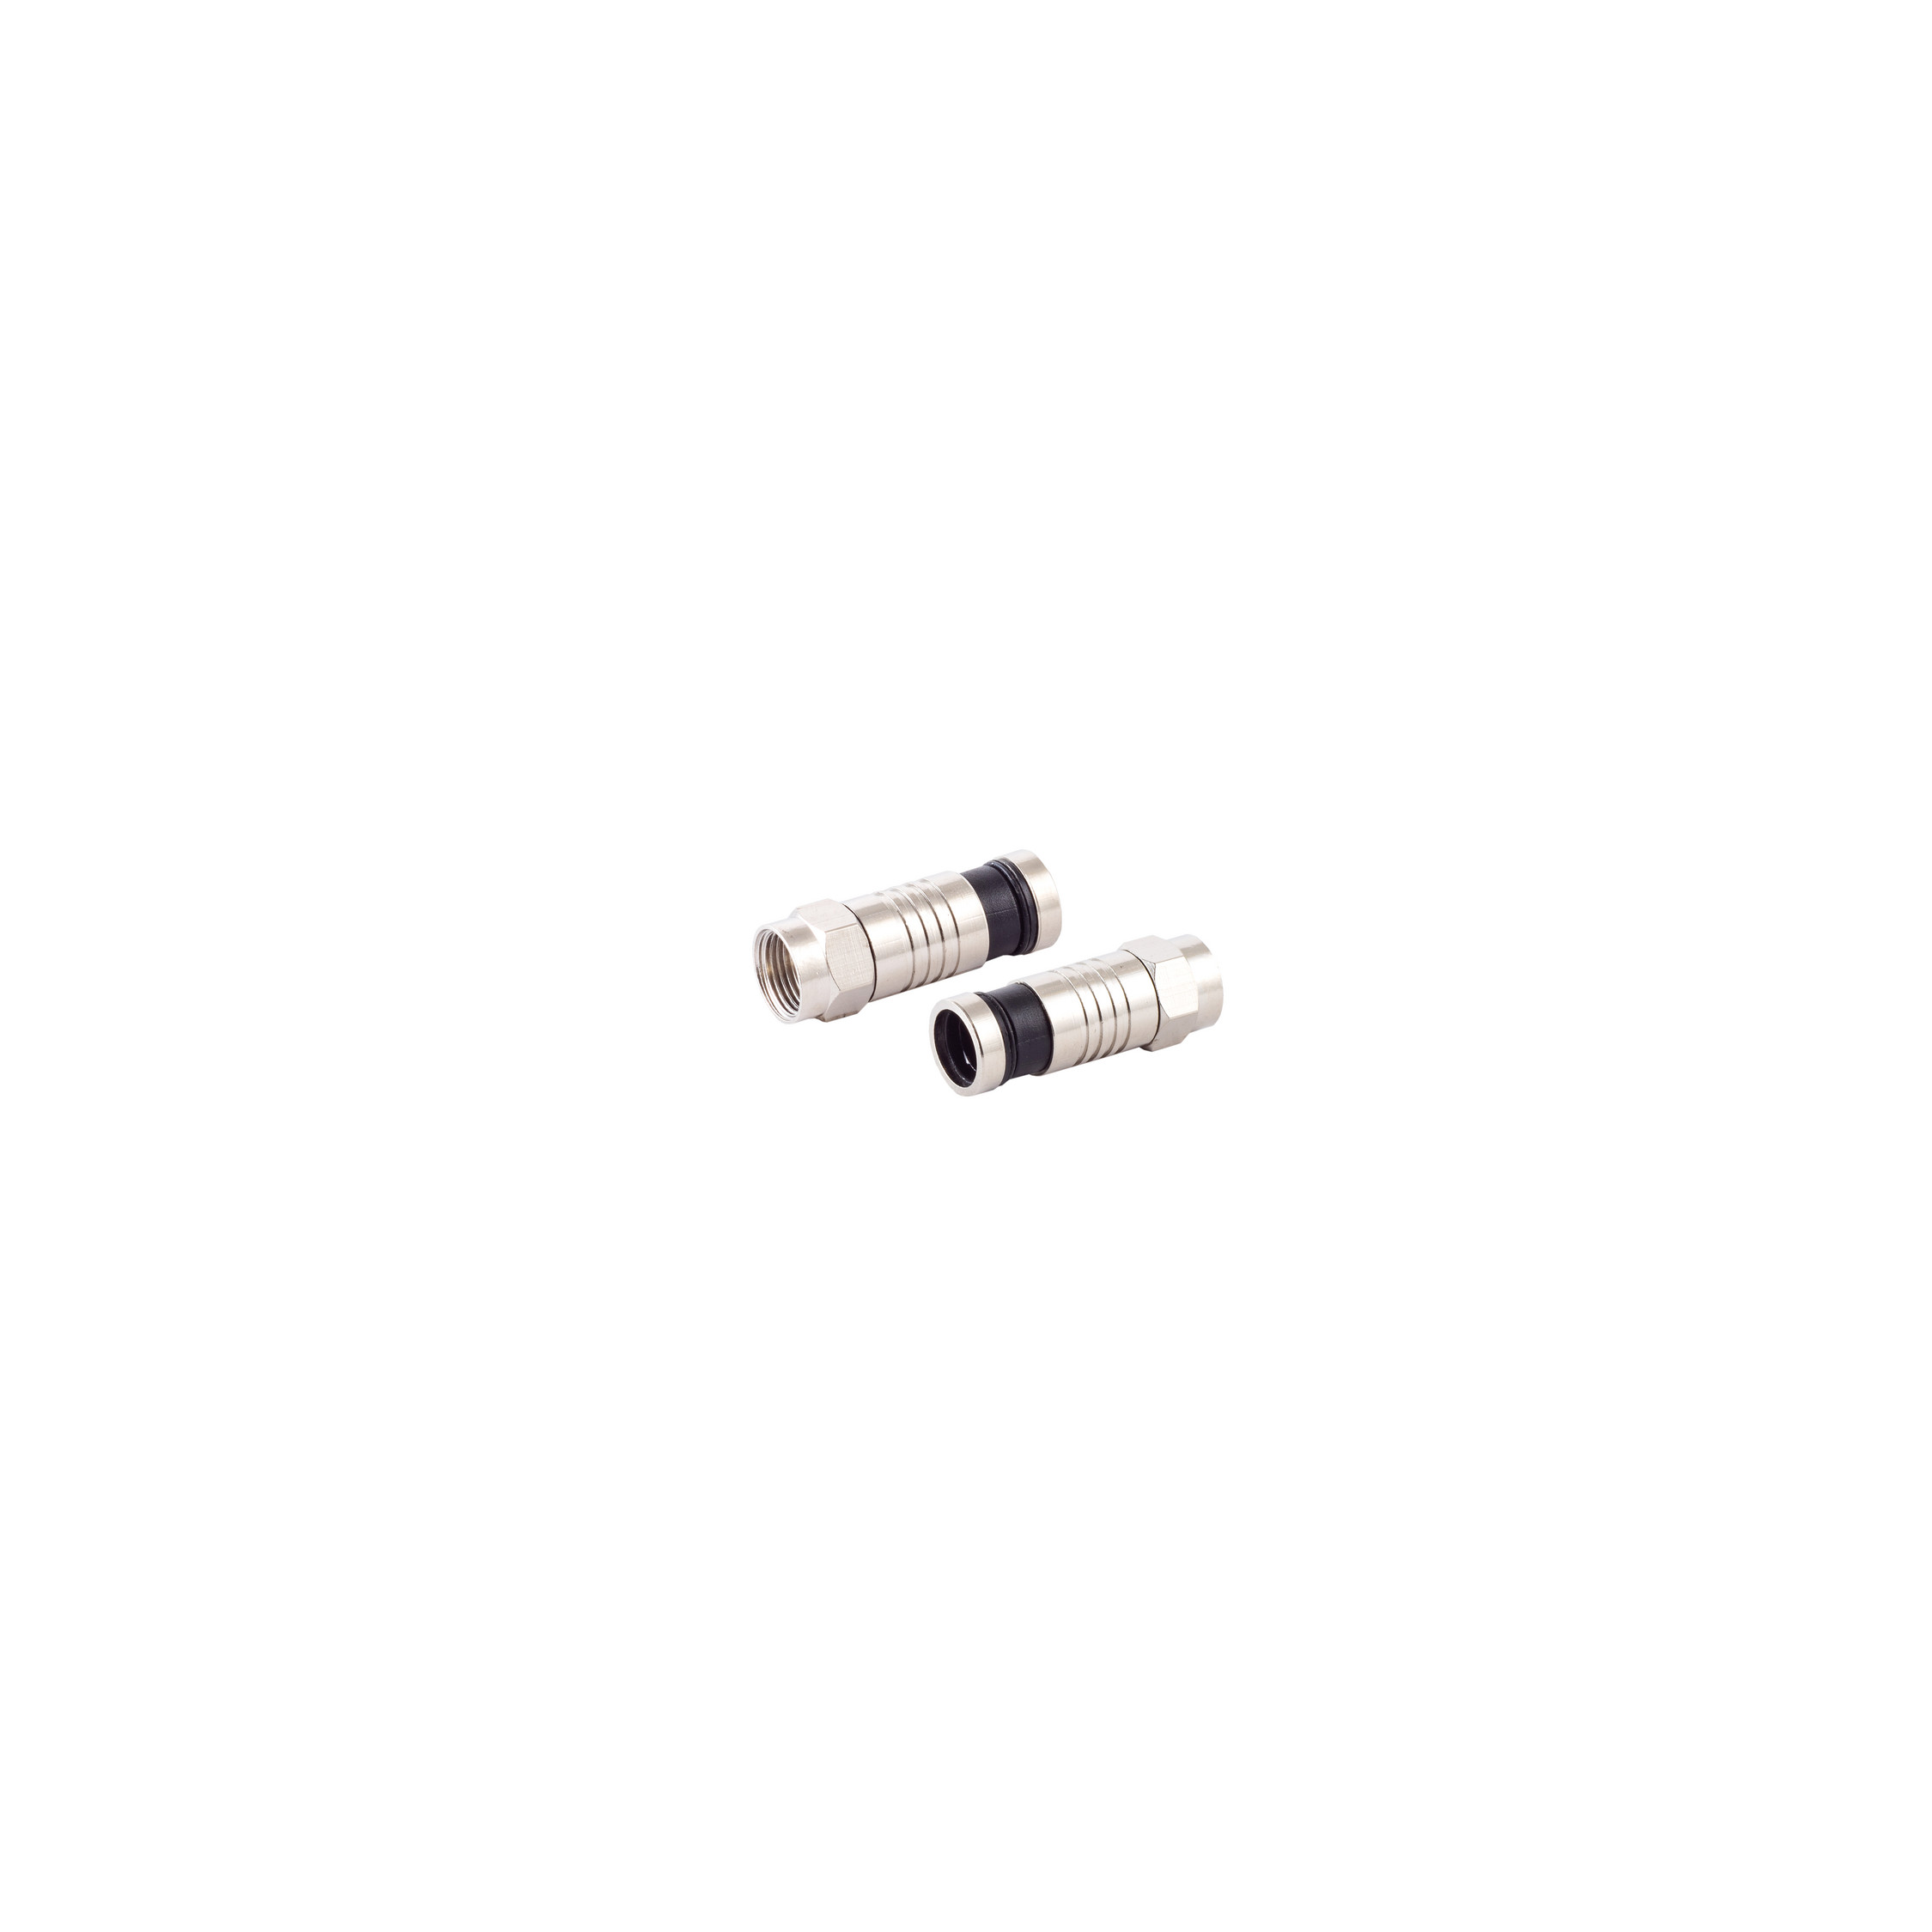 CONNECTIVITY Kabel S/CONN Adapter & 7,2mm Stecker MAXIMUM für F-Kompressionsstecker SAT